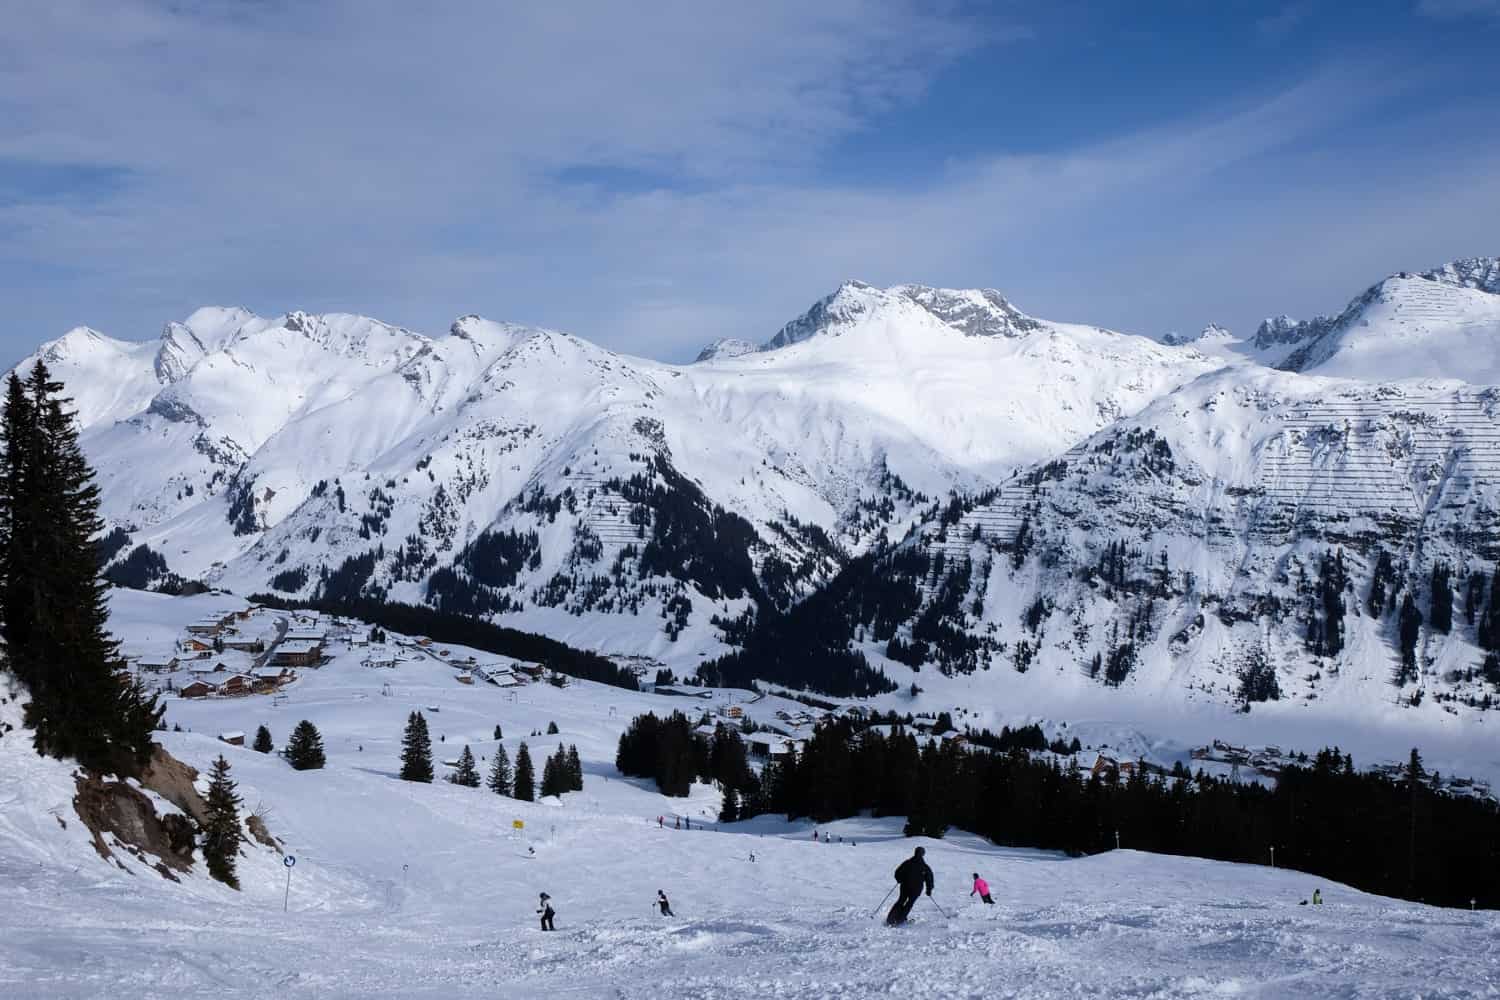 Ski slopes in Lech, Austria